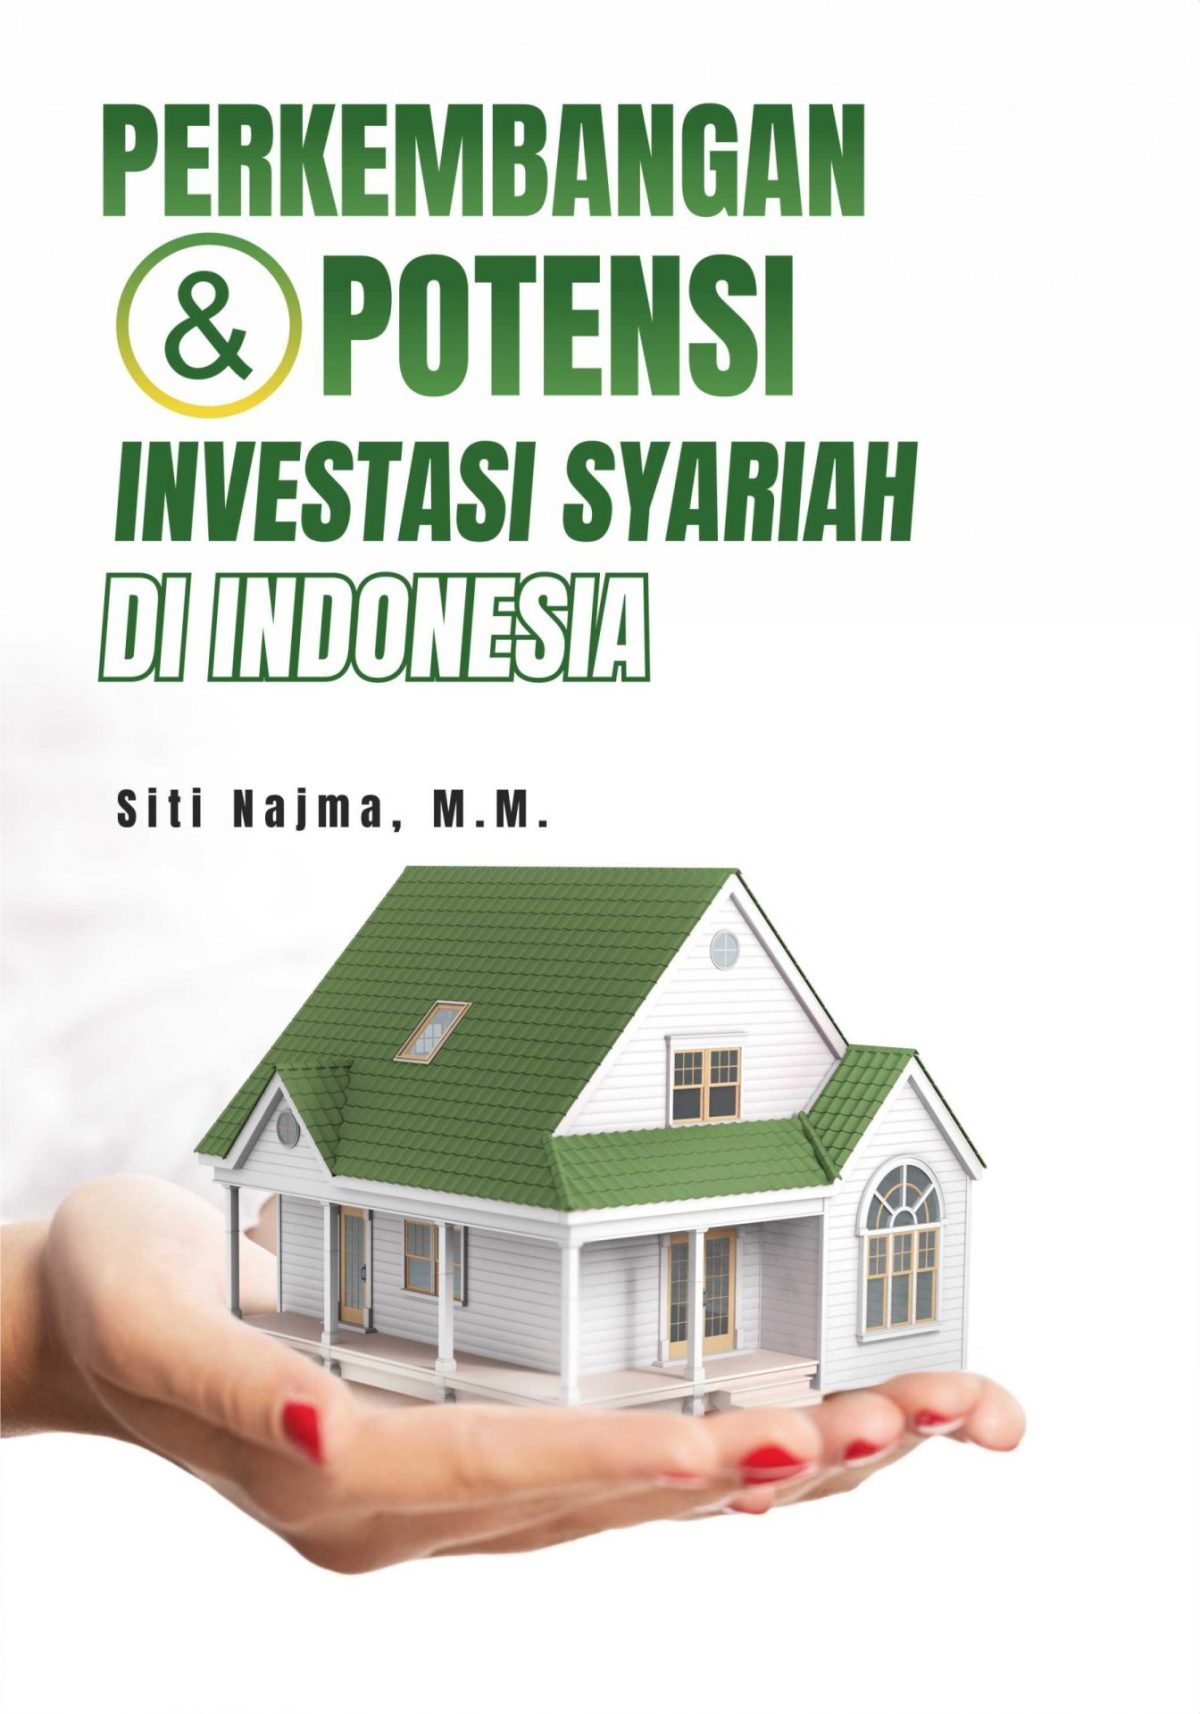 Perkembangan dan Potensi Investasi Syariah di Indonesia